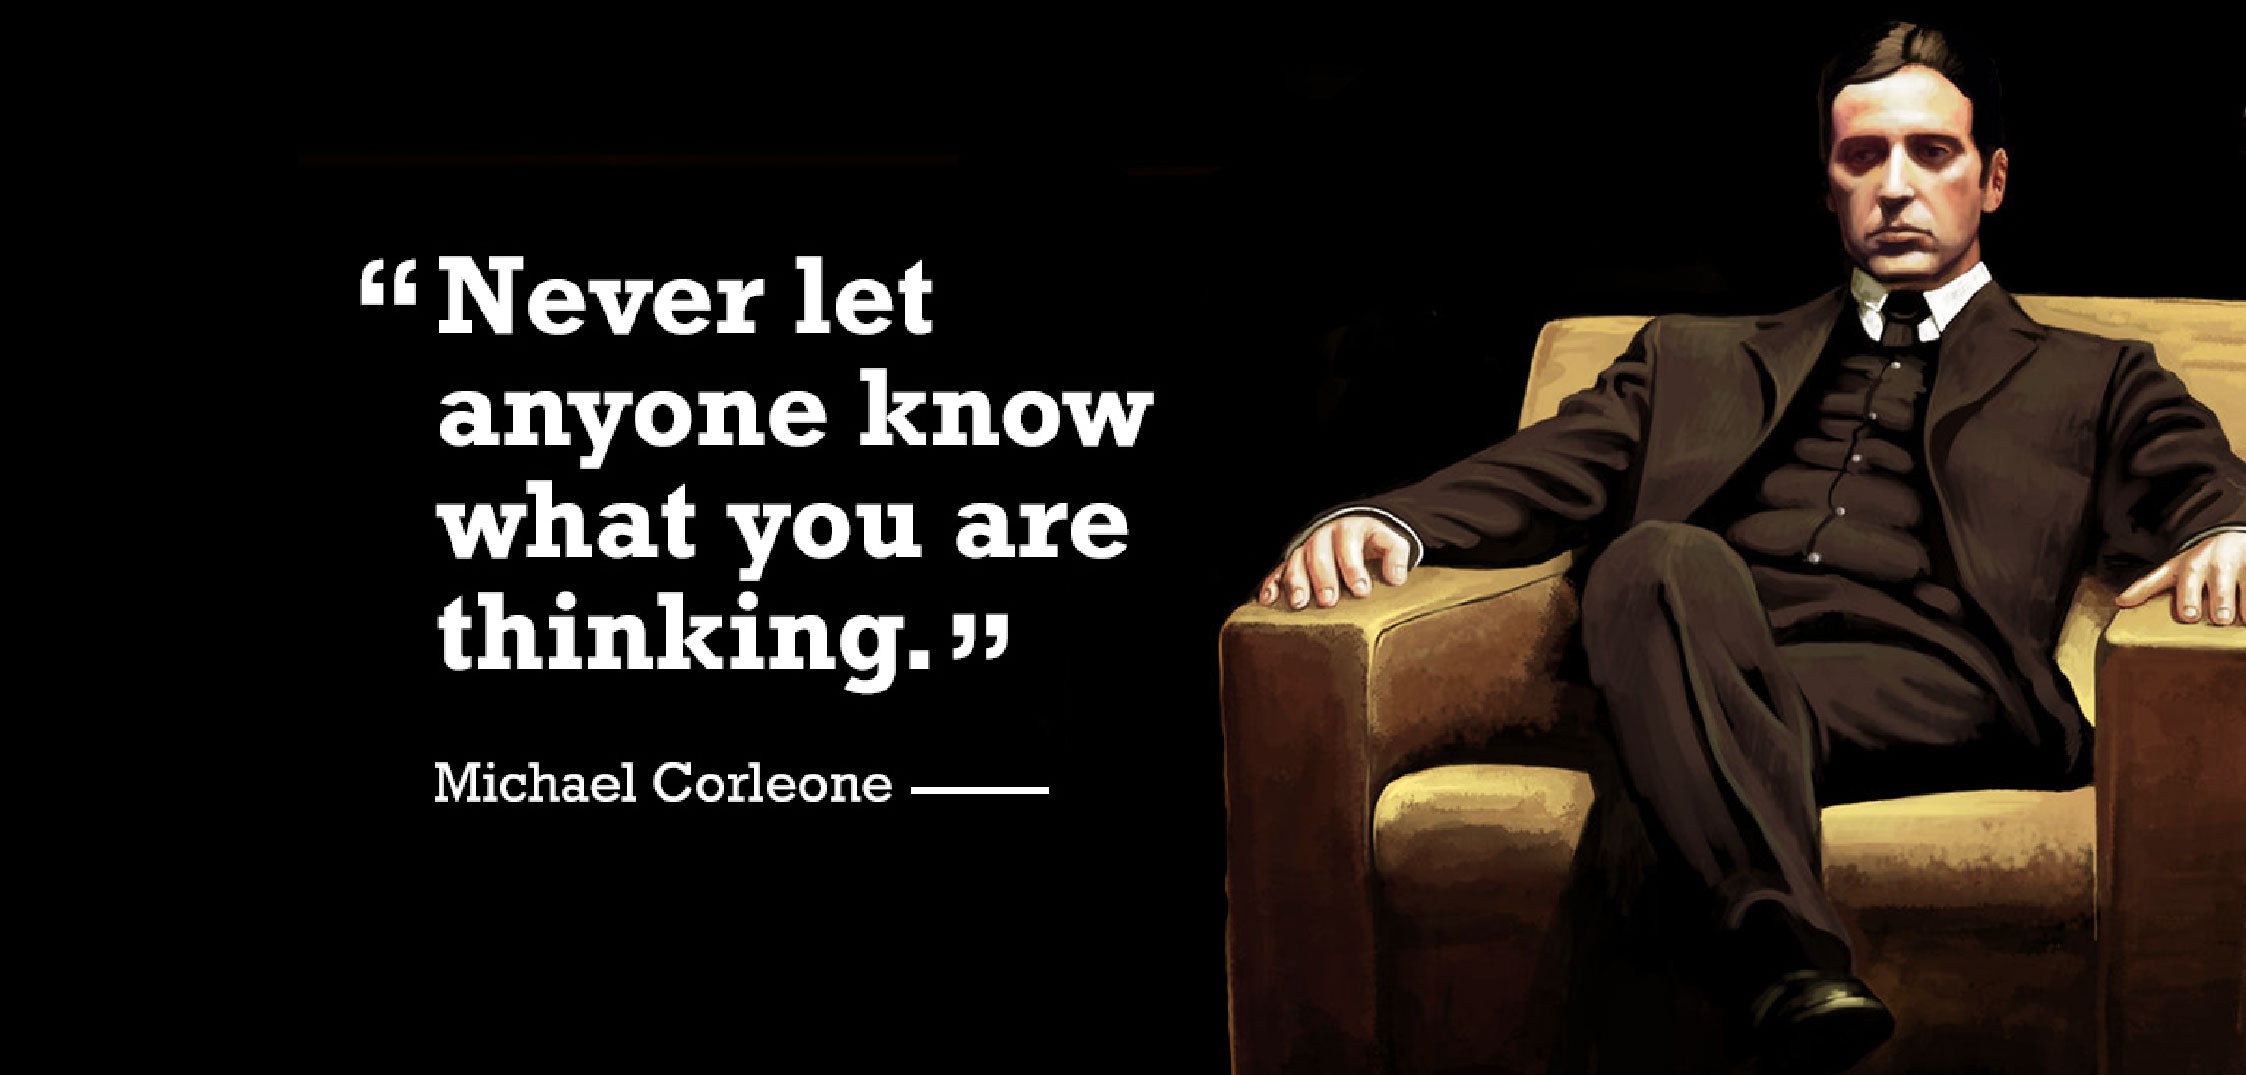 Favor vito corleone quotes The Godfather: